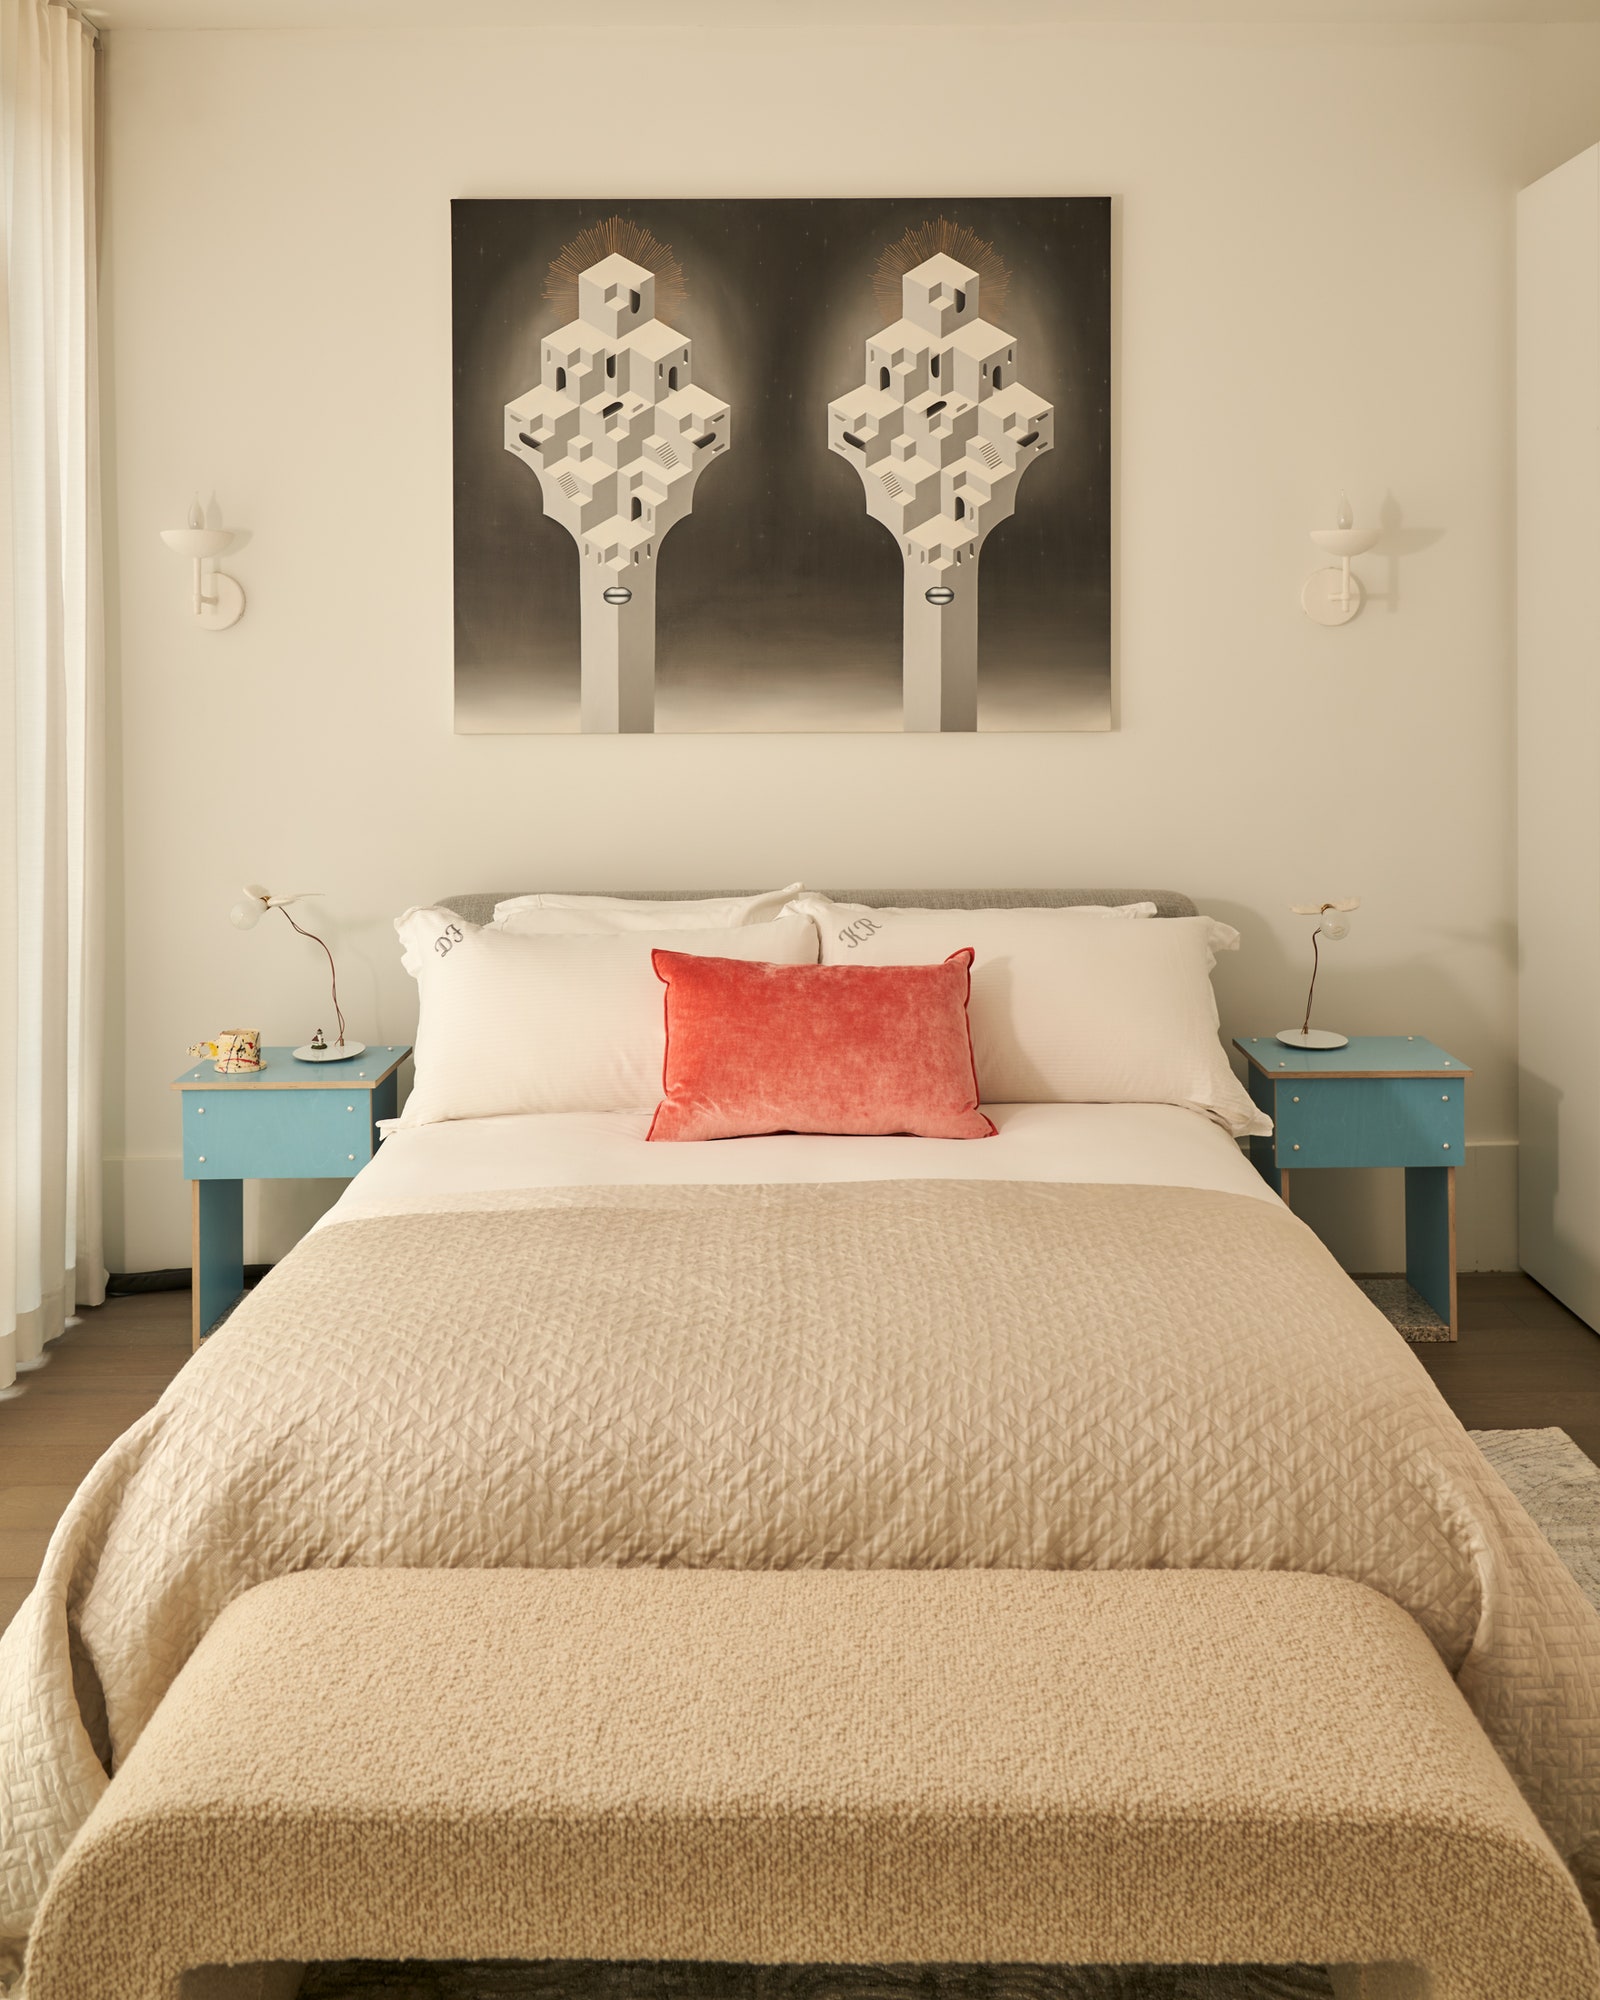 L'image peut contenir un tapis de lit et un coussin de design d'intérieur de meubles de chambre à coucher.